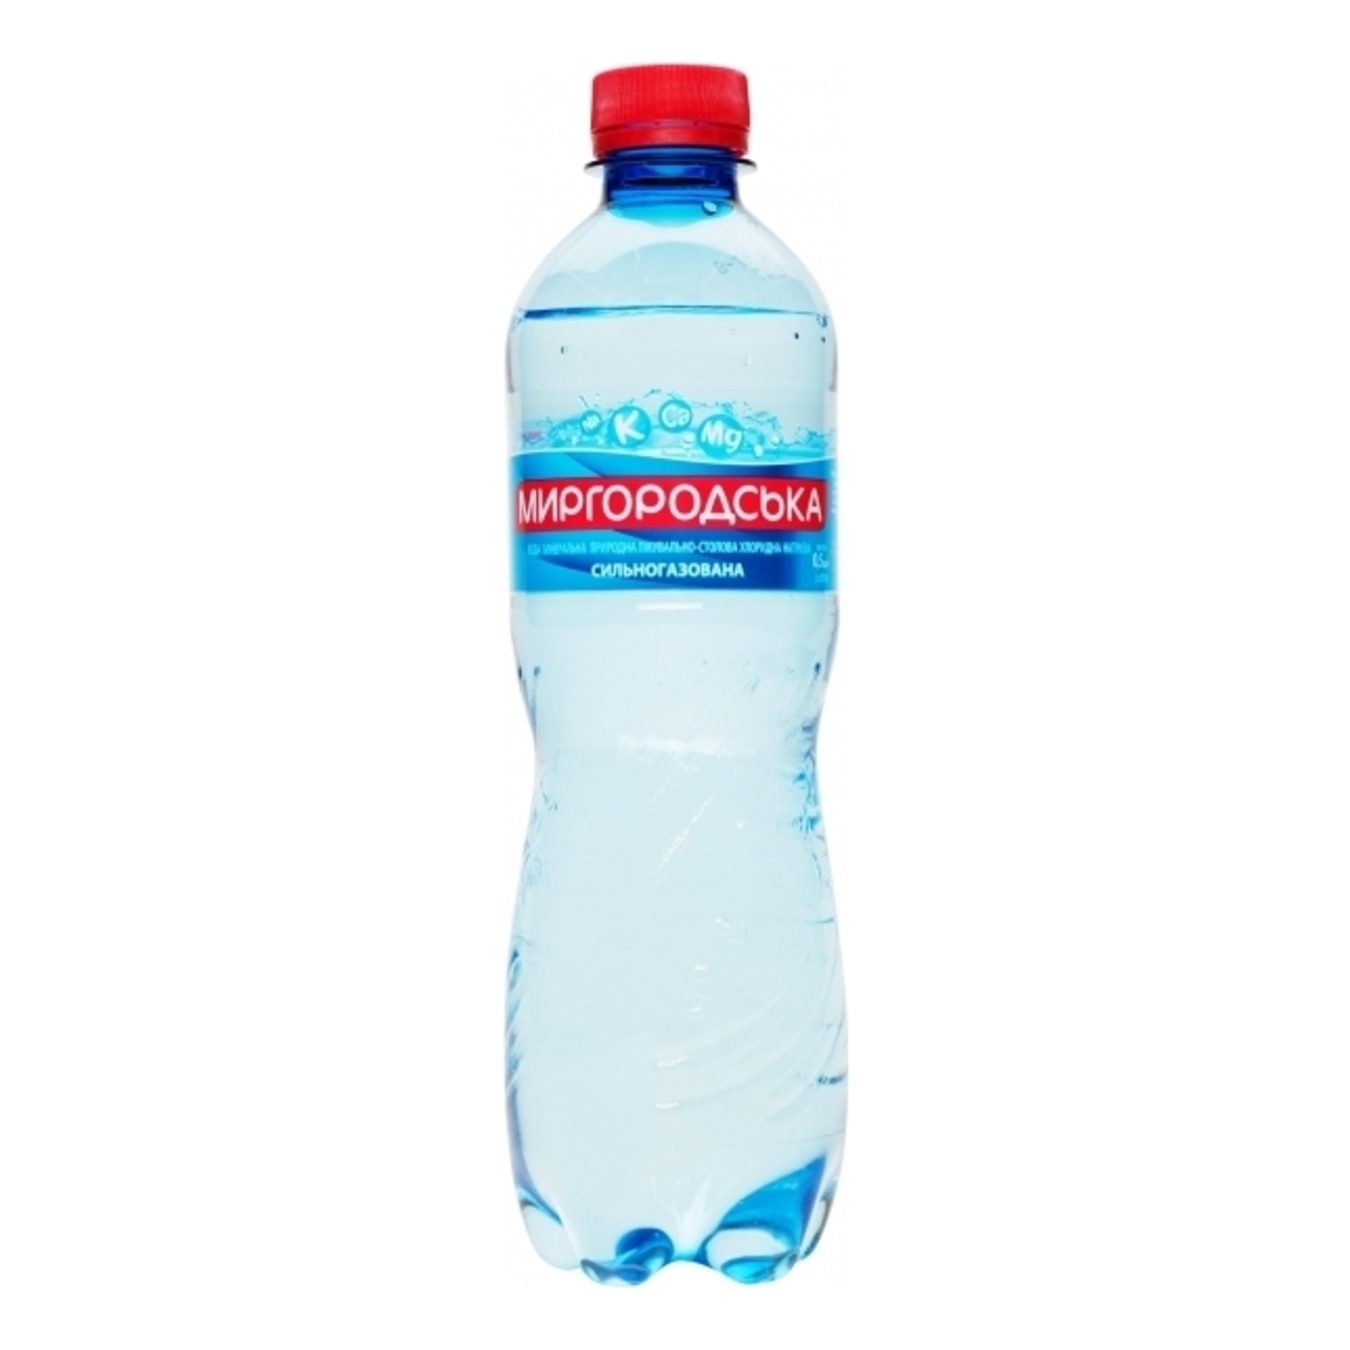 Вода минеральная Миргородська сильногазована 0,5л